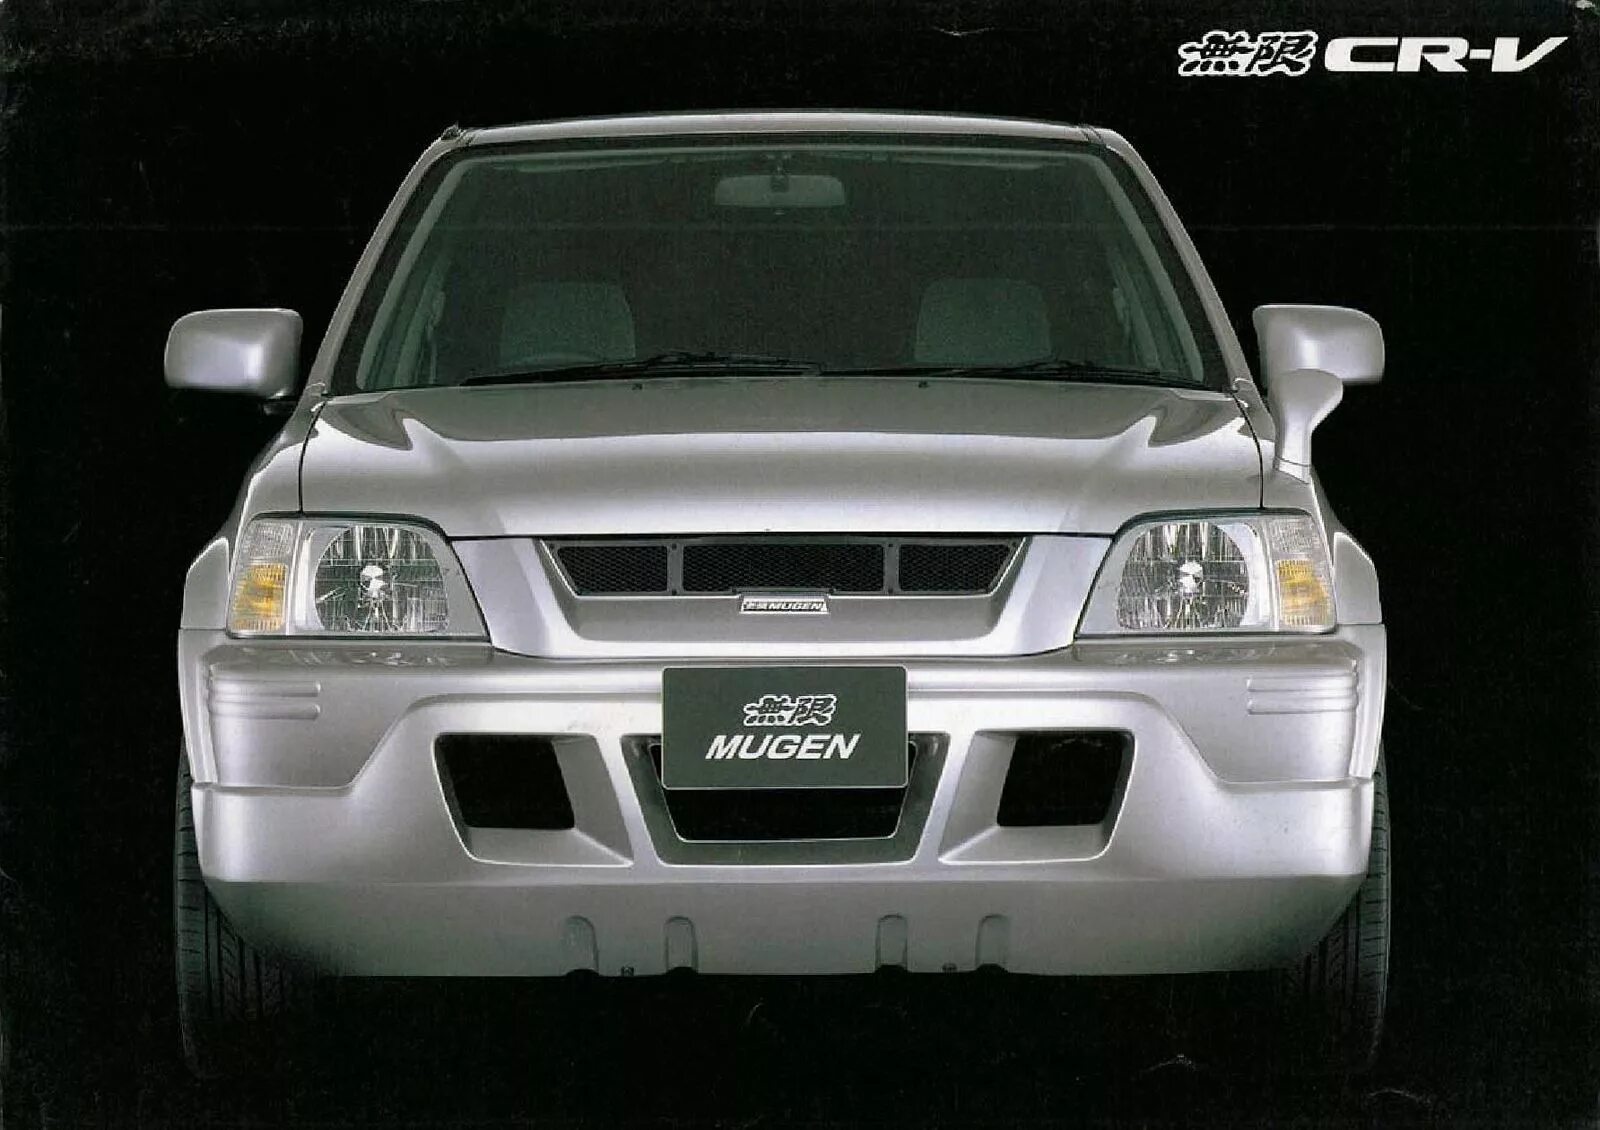 V rd1 купить. Honda CR V 1 поколение Mugen. Honda CR-V rd1 Japan. Honda CRV 2000 Mugen. Honda CRV 1 Mugen.